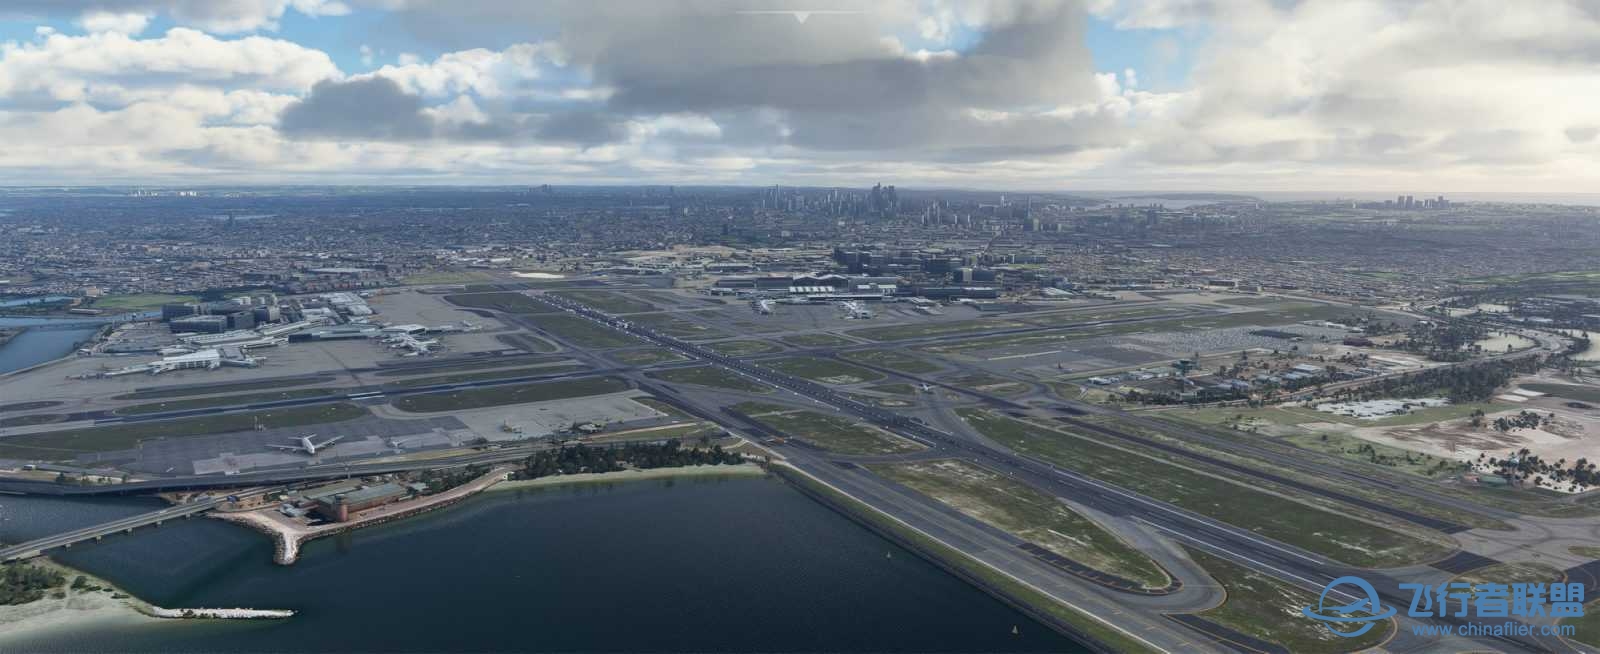 FlyTampa悉尼机场预览和加入Orbx合作计划-3942 